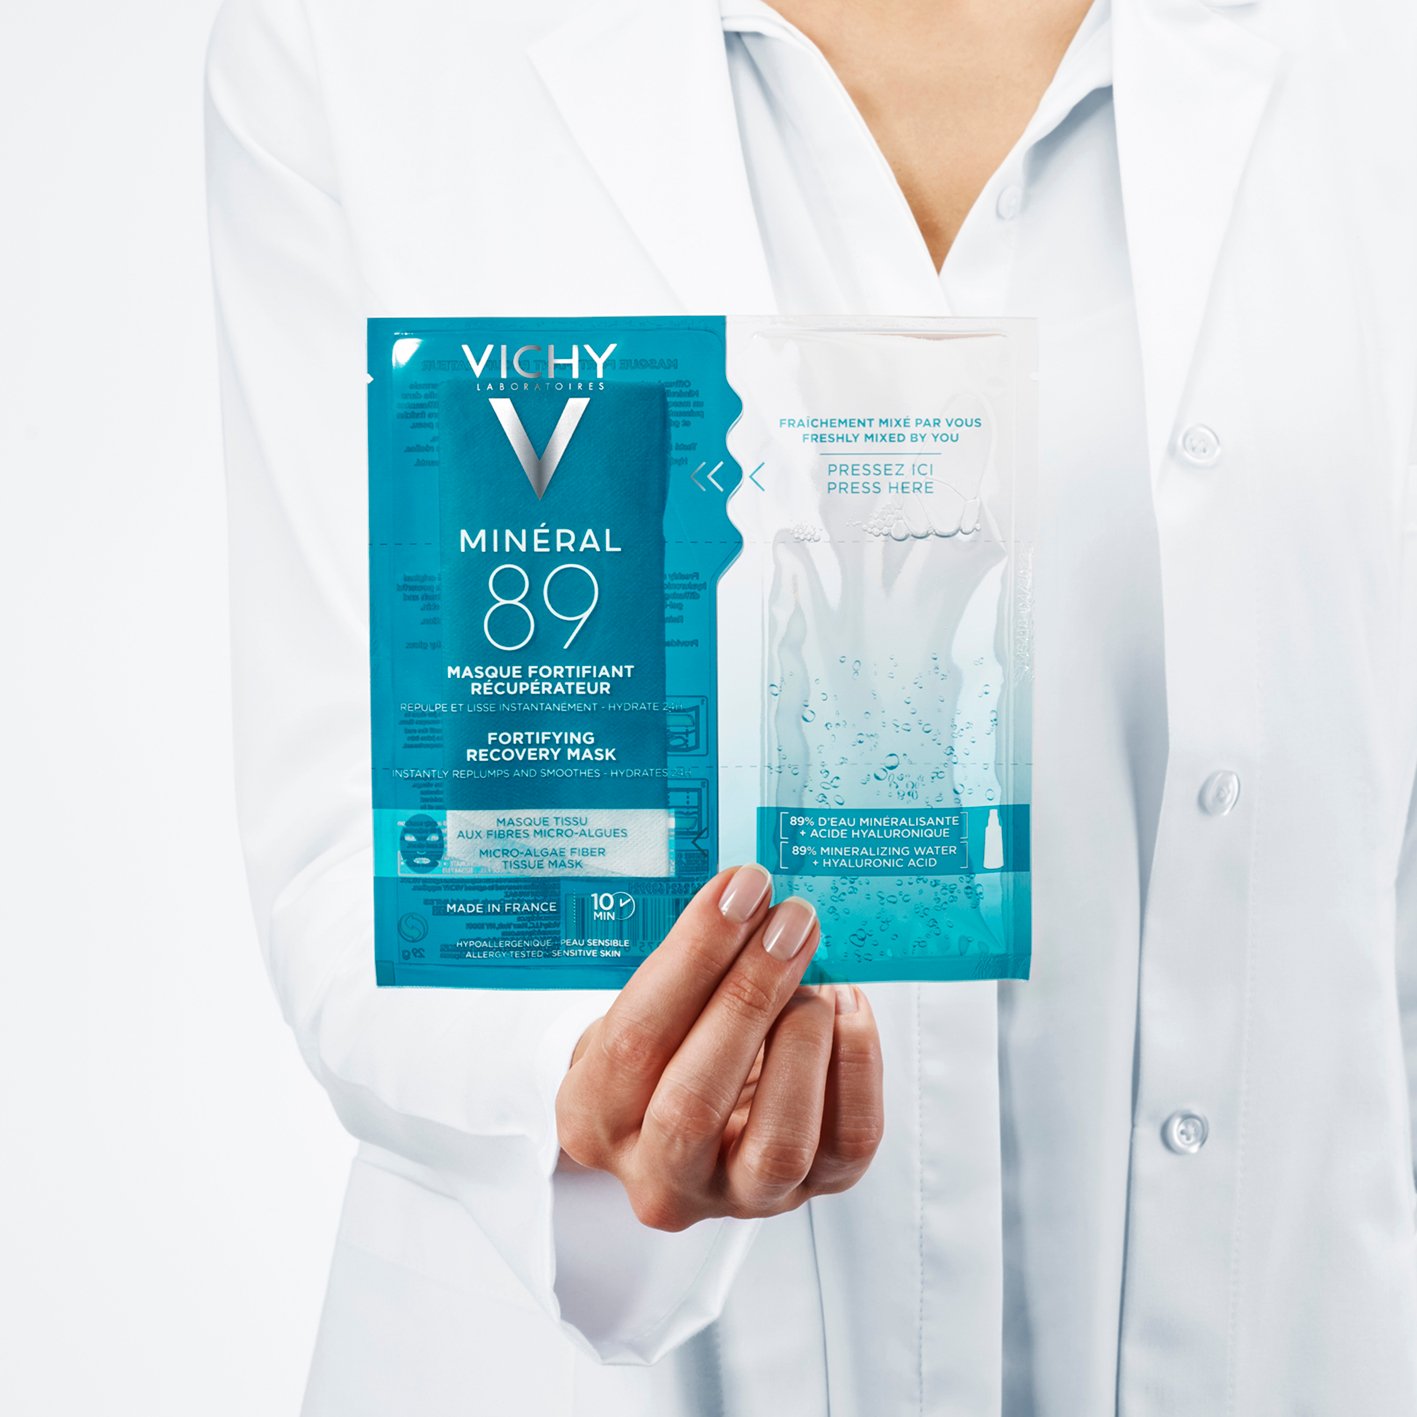 Укрепляющая тканевая маска Vichy Mineral 89, для увлажнения и восстановления кожи лица, 29 мл - фото 5